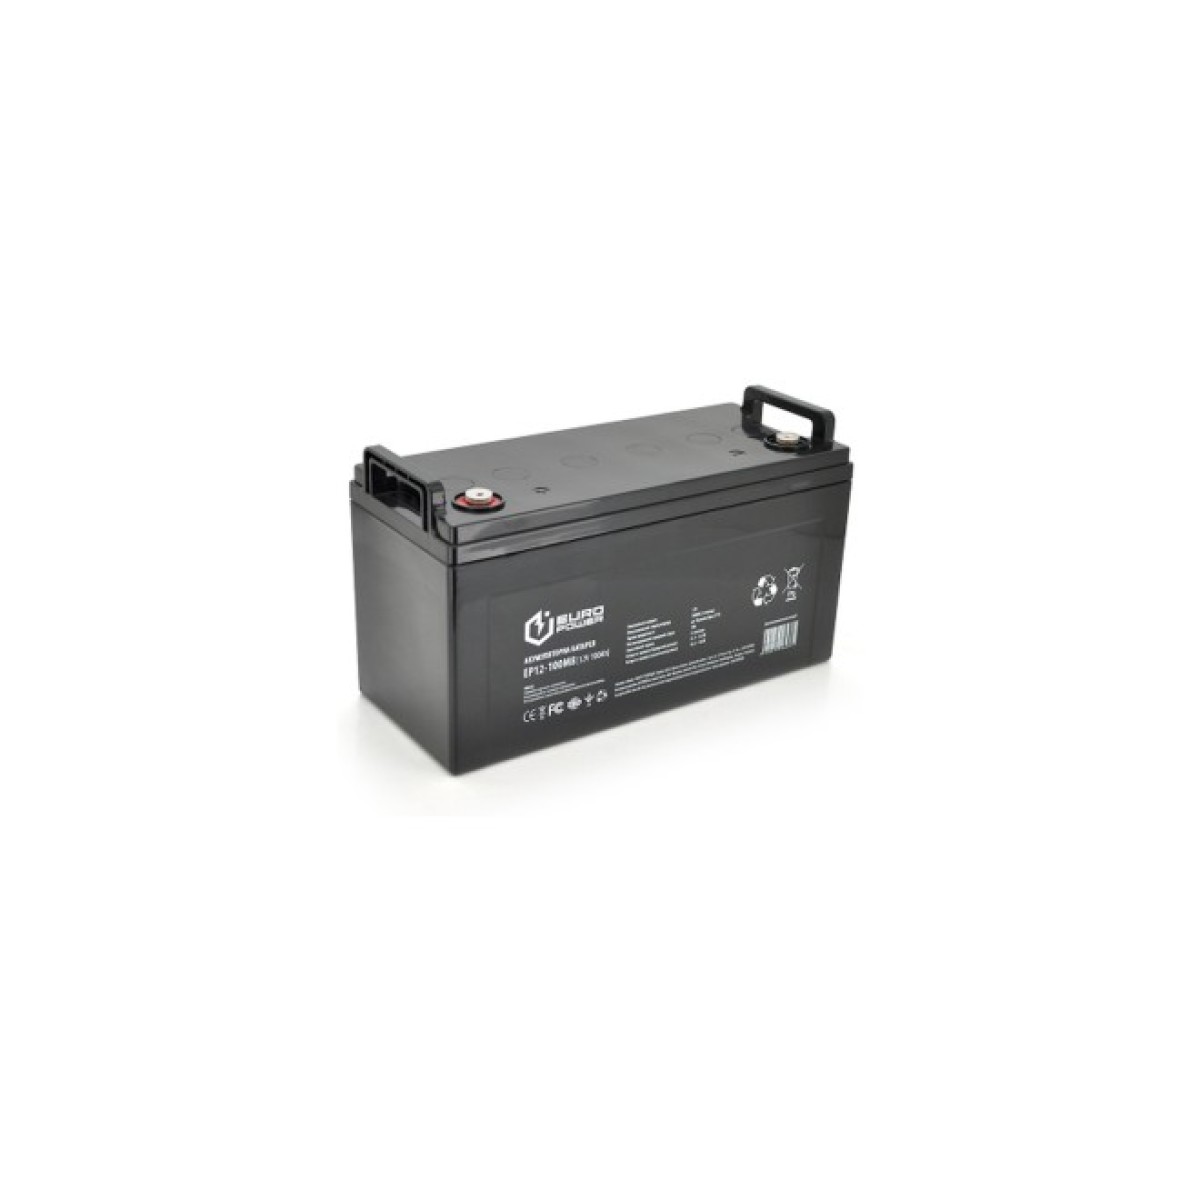 Батарея к ИБП Europower 12В 100Ач (EP12-100M8) 256_256.jpg